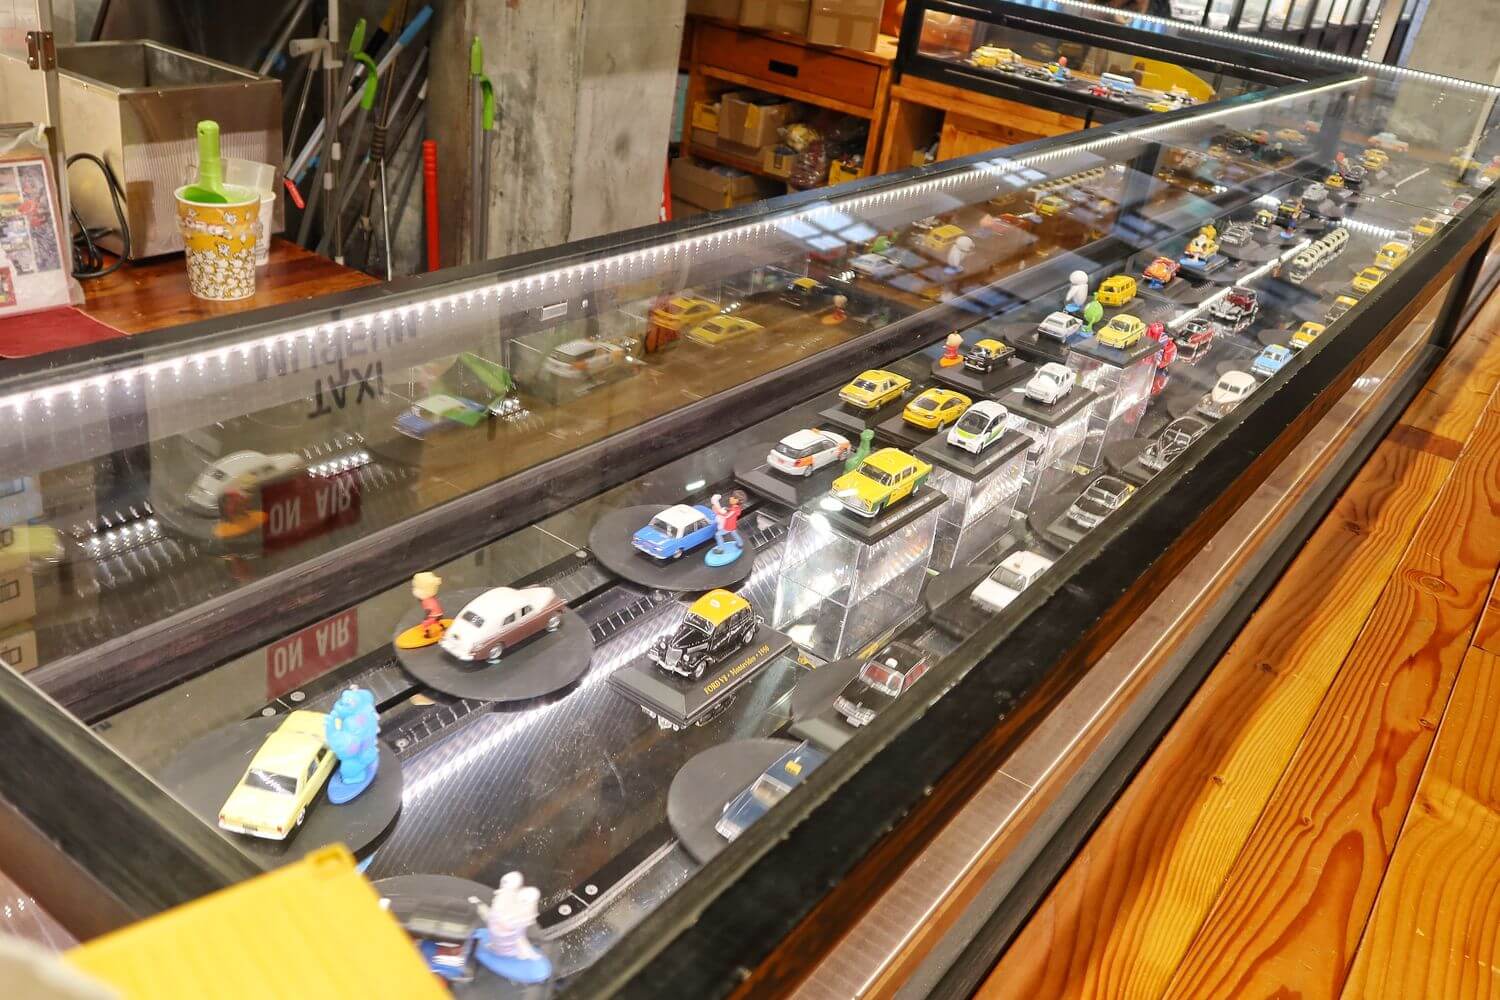 【蘇澳室內景點】車迷注意啦! 計程車博物館TAXI Museum，收藏各國經典古董車，還有碰碰車可以玩! @混血珊莎的奇幻旅程